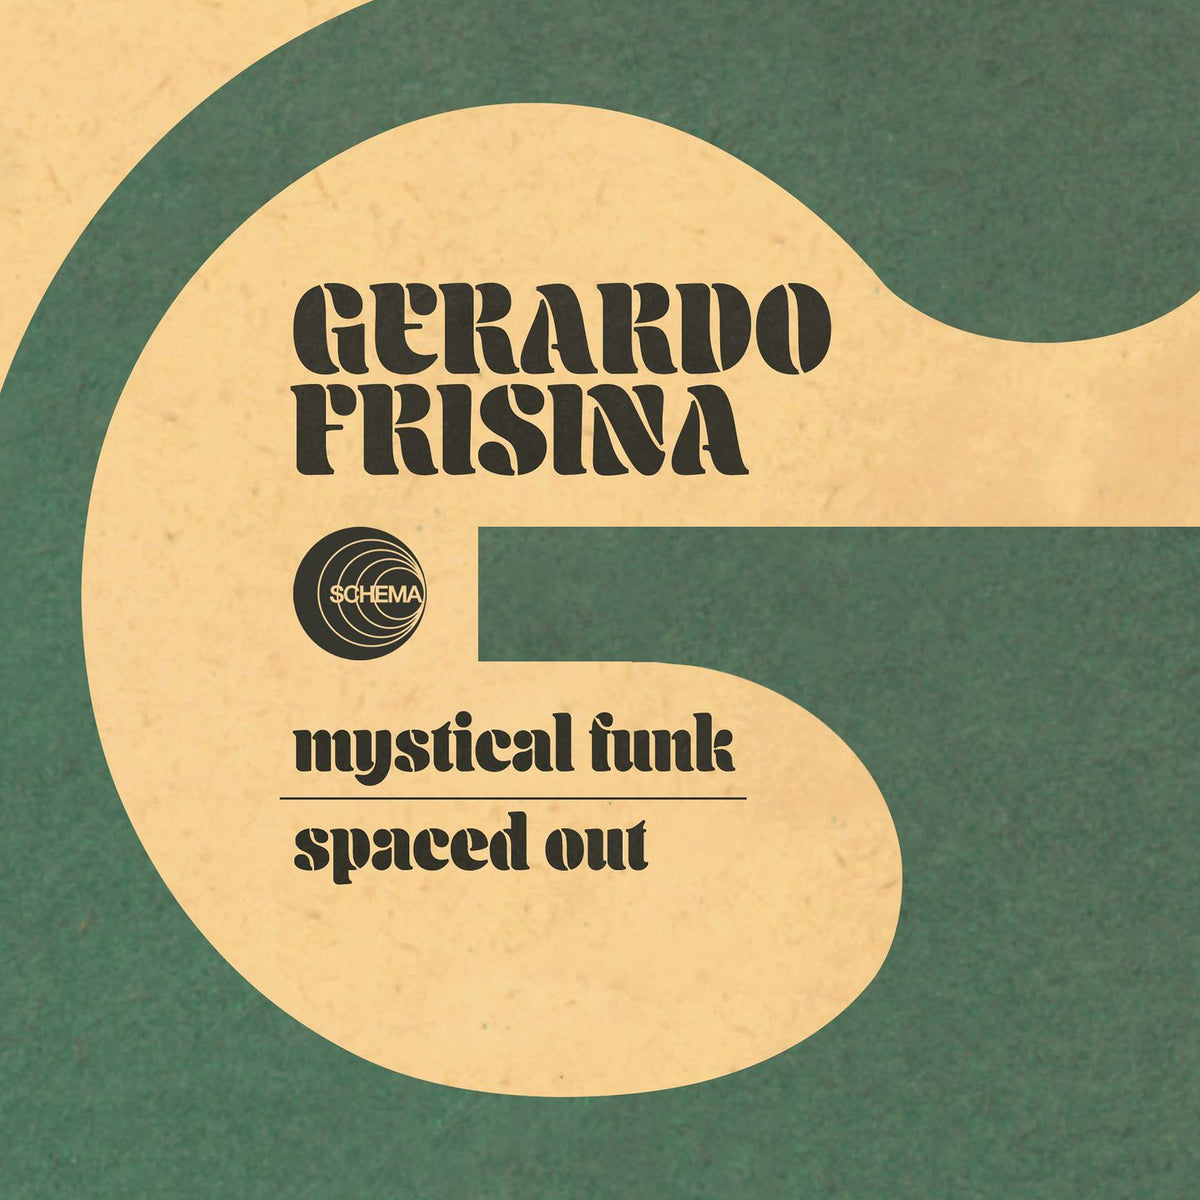 Gerardo Frisina - Mystical Funk b/w Spaced Out